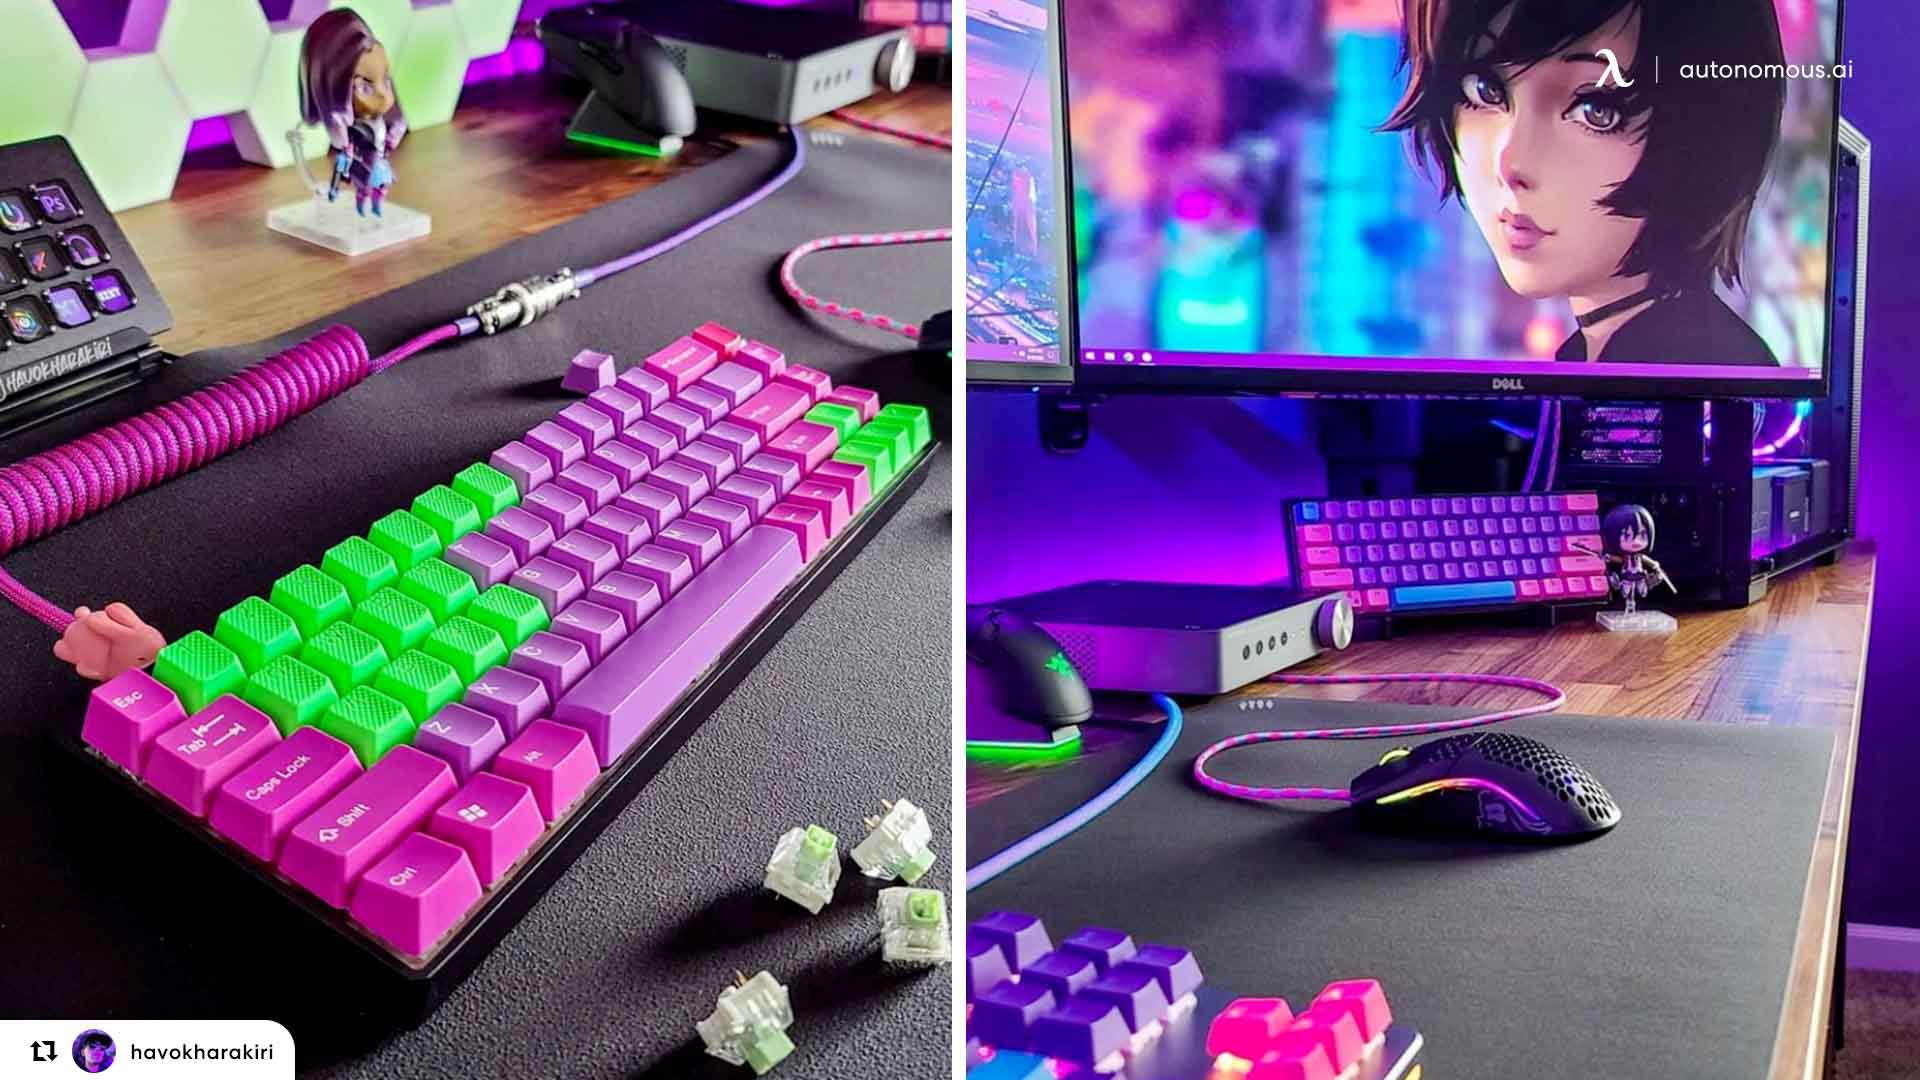 Keyboard & Mouse in gaming laptop setup